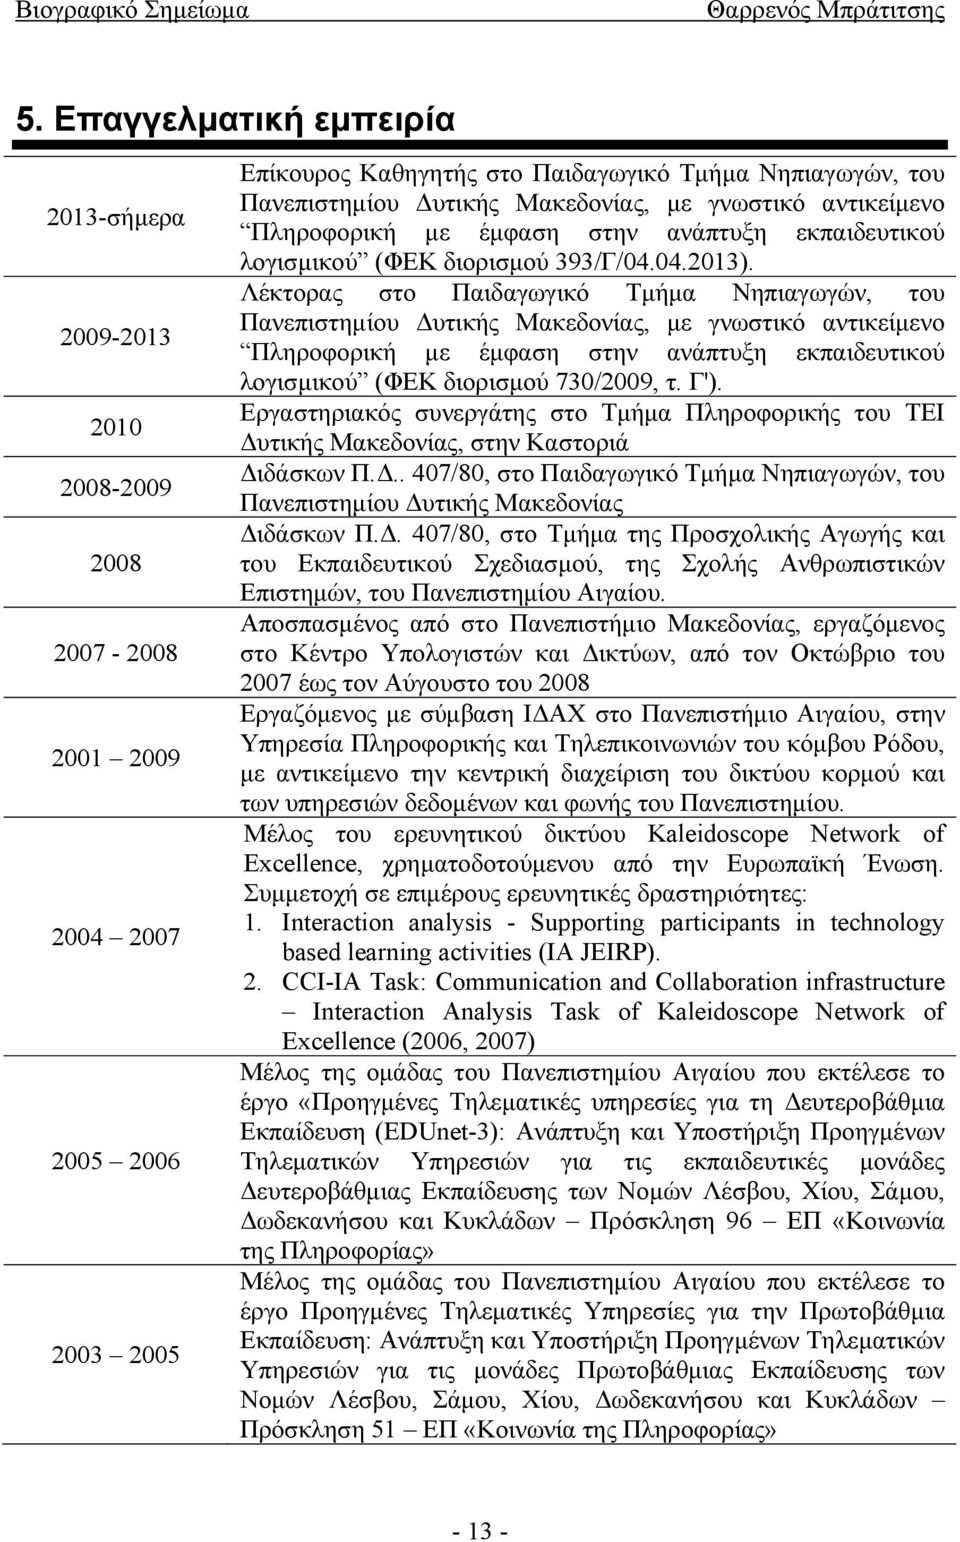 Λέκτορας στο Παιδαγωγικό Τμήμα Νηπιαγωγών, του Πανεπιστημίου Δυτικής Μακεδονίας, με γνωστικό αντικείμενο Πληροφορική με έμφαση στην ανάπτυξη εκπαιδευτικού λογισμικού (ΦΕΚ διορισμού 730/2009, τ. Γ').